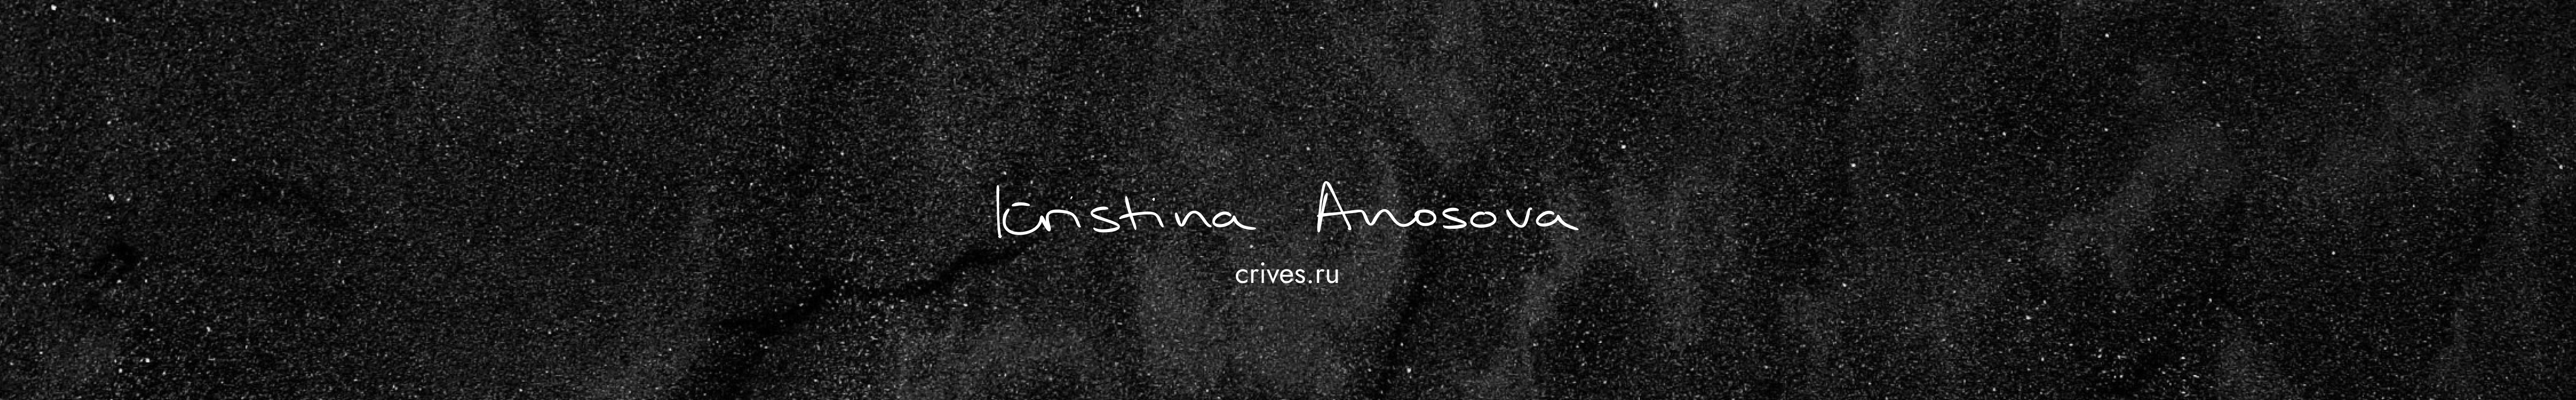 Kristina Anosova's profile banner